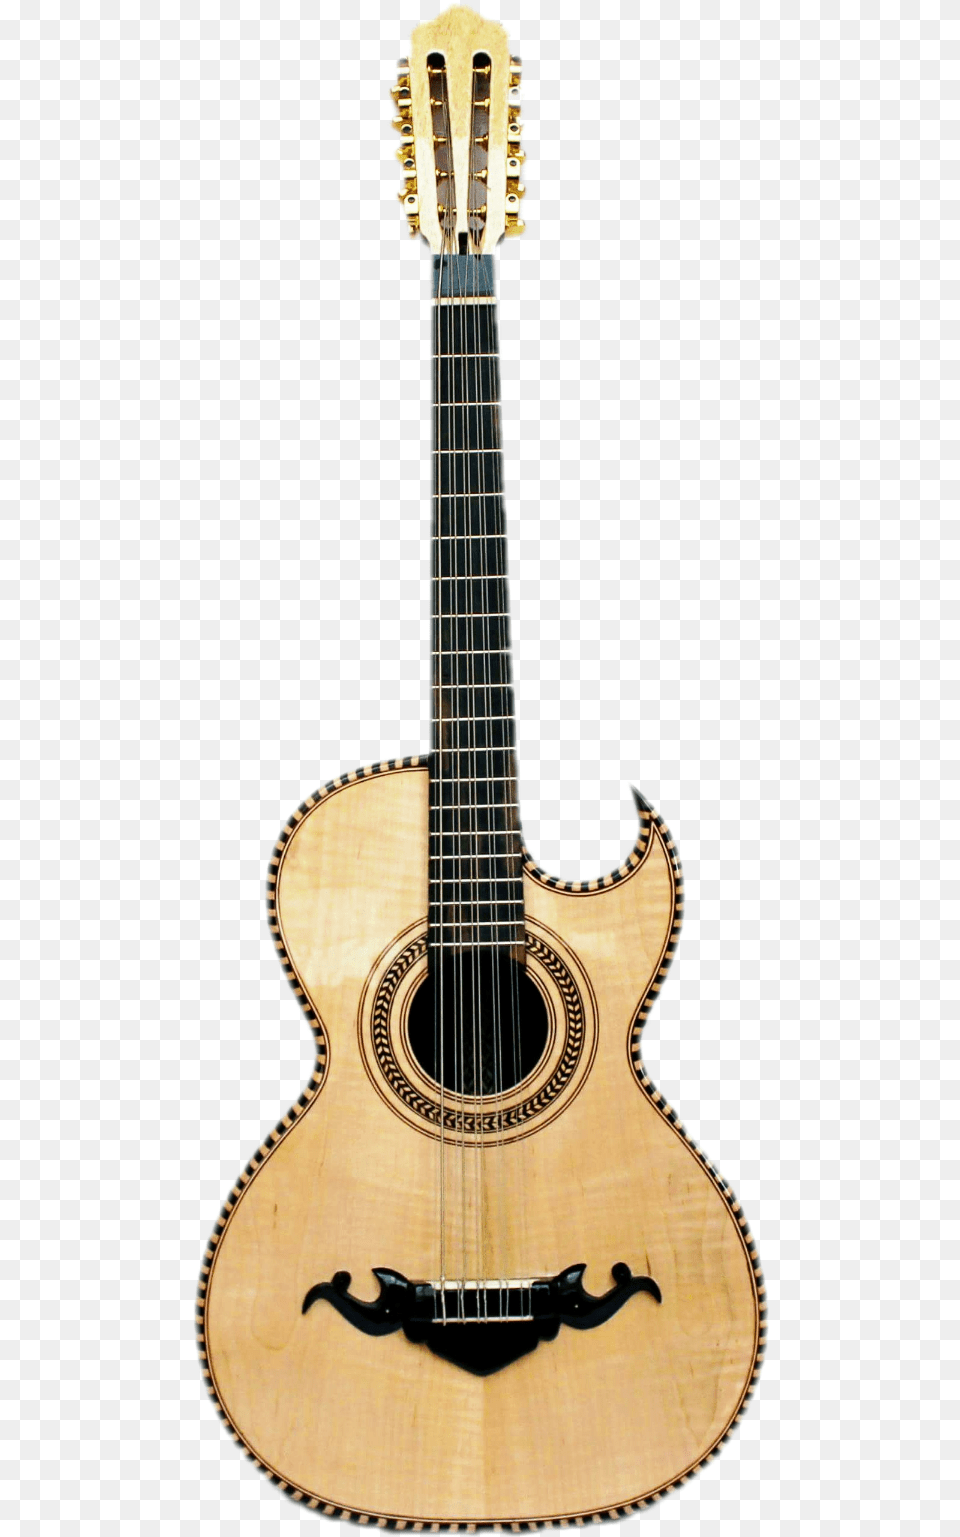 Bajo Quinto De Palo De Rosa Acoustic Guitar, Musical Instrument, Lute Free Png Download